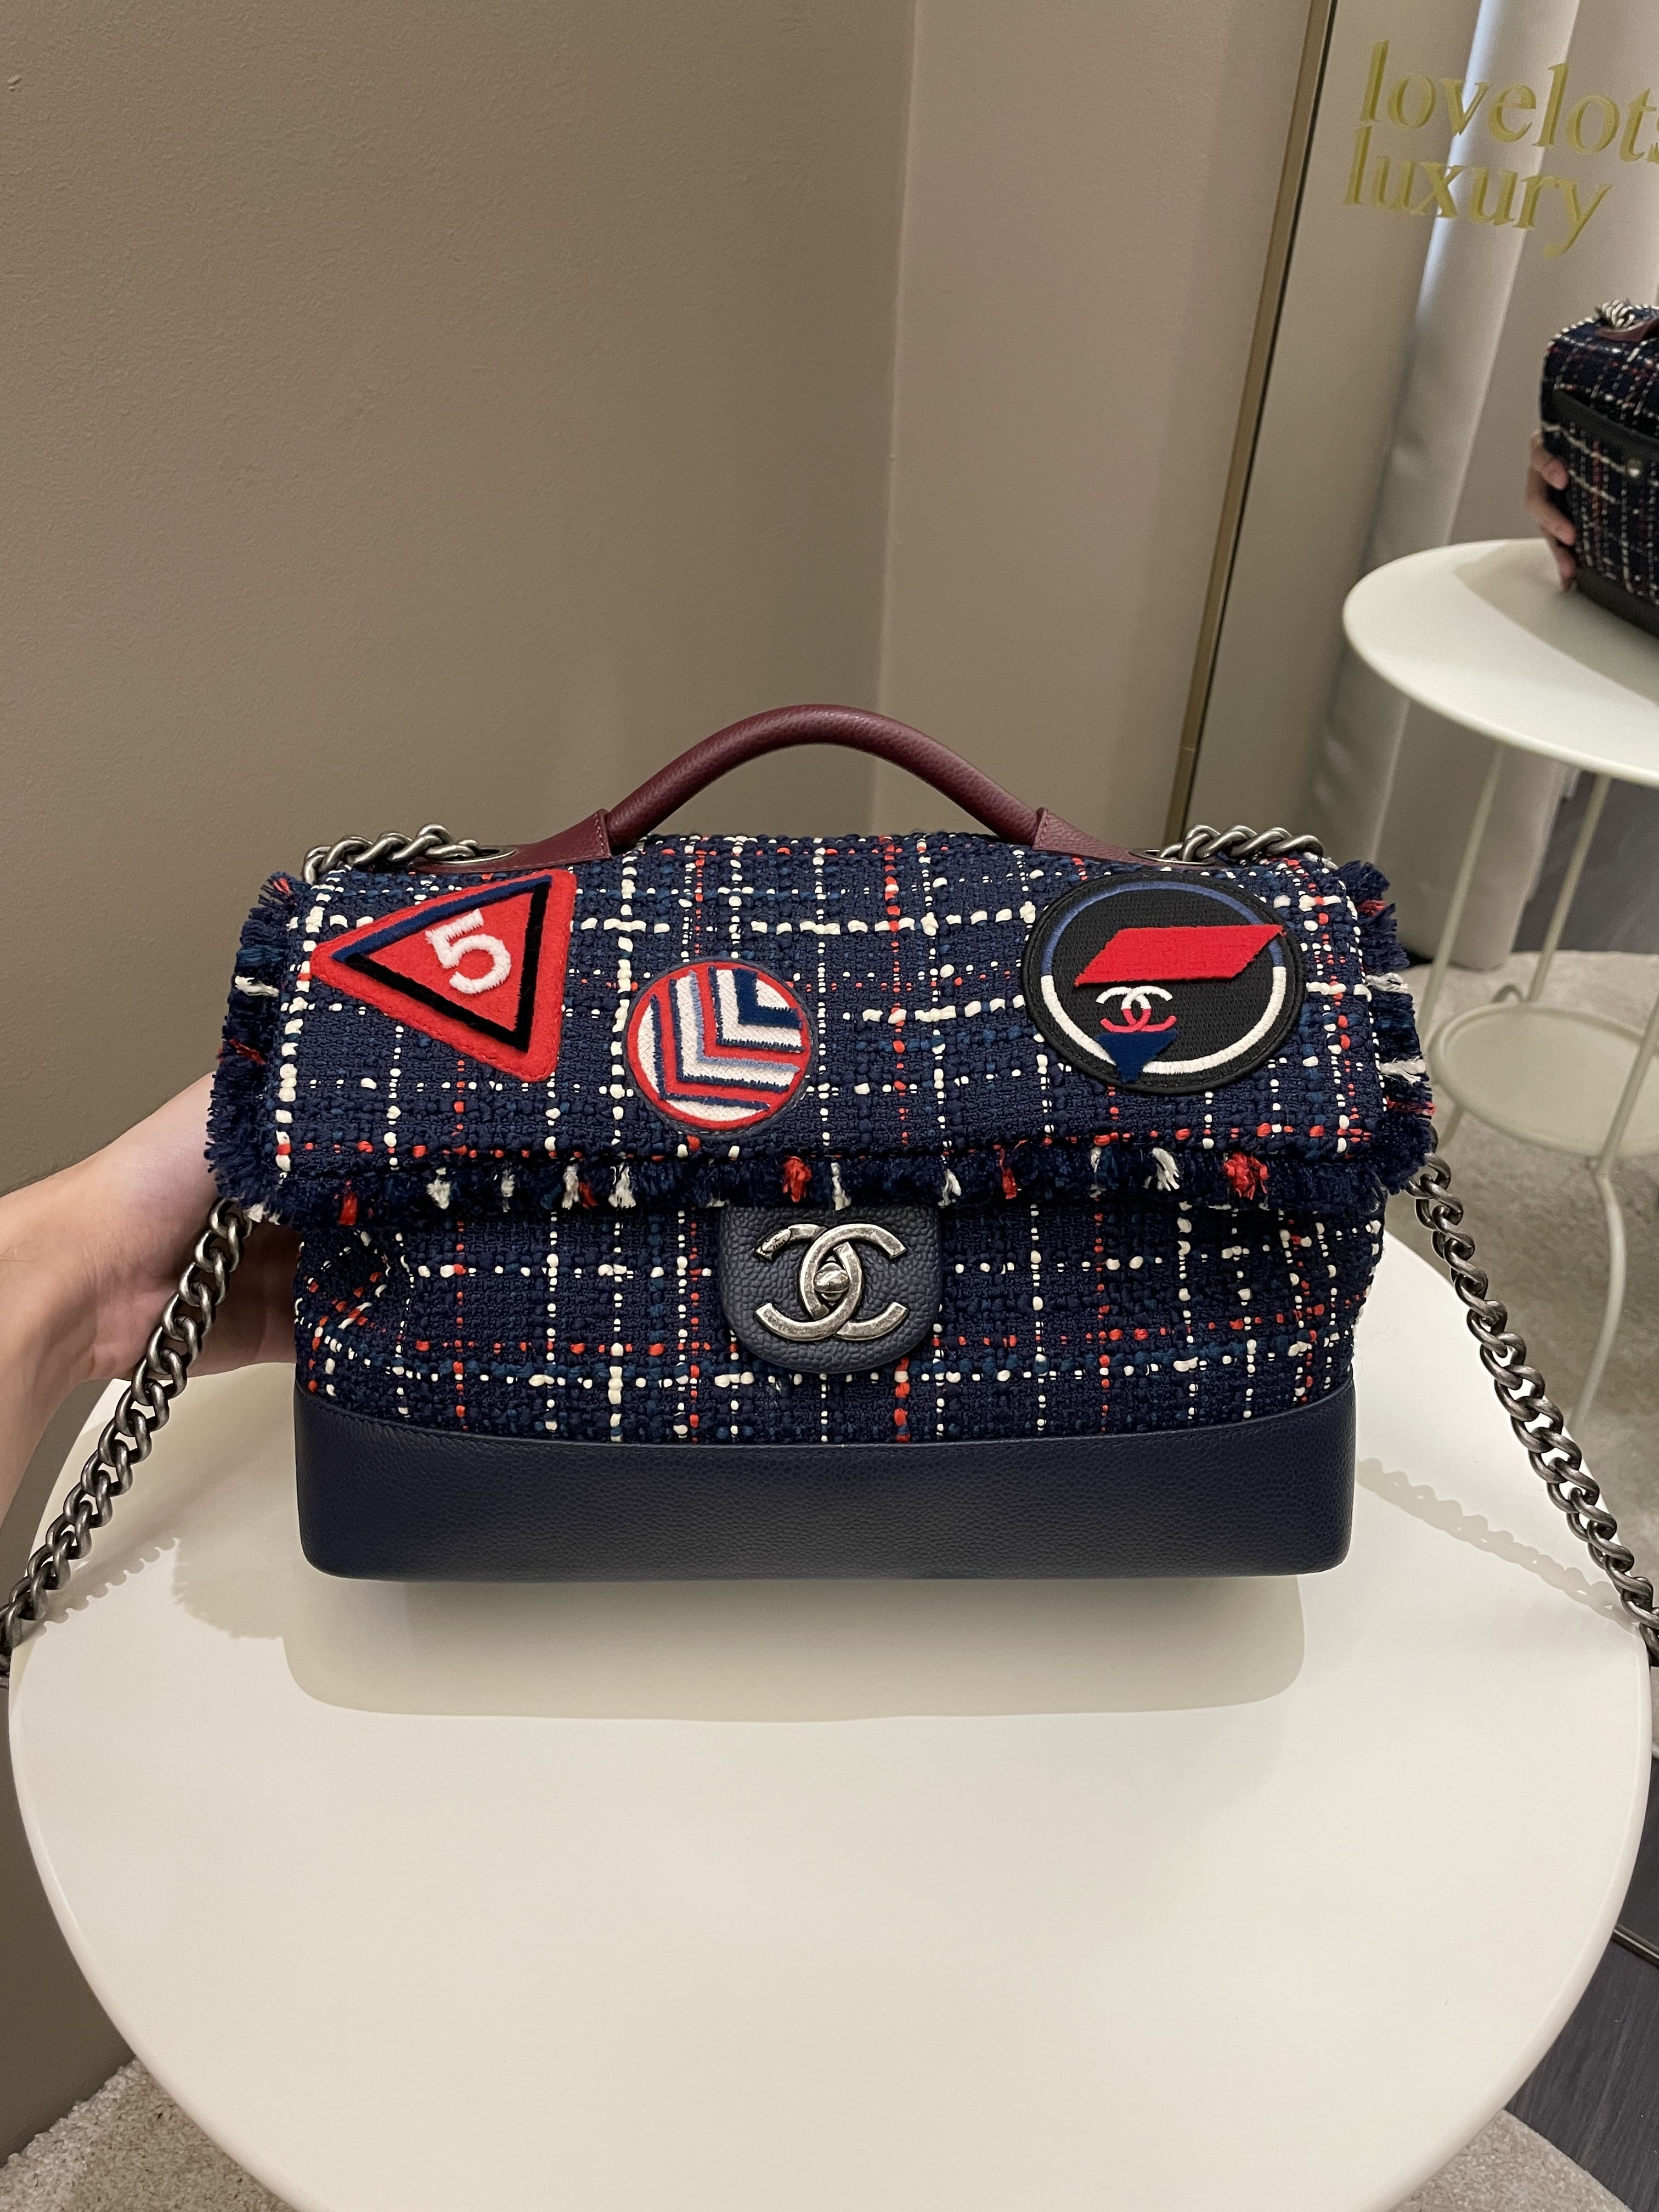 Chanel Multicolor Tweed Flap Bag